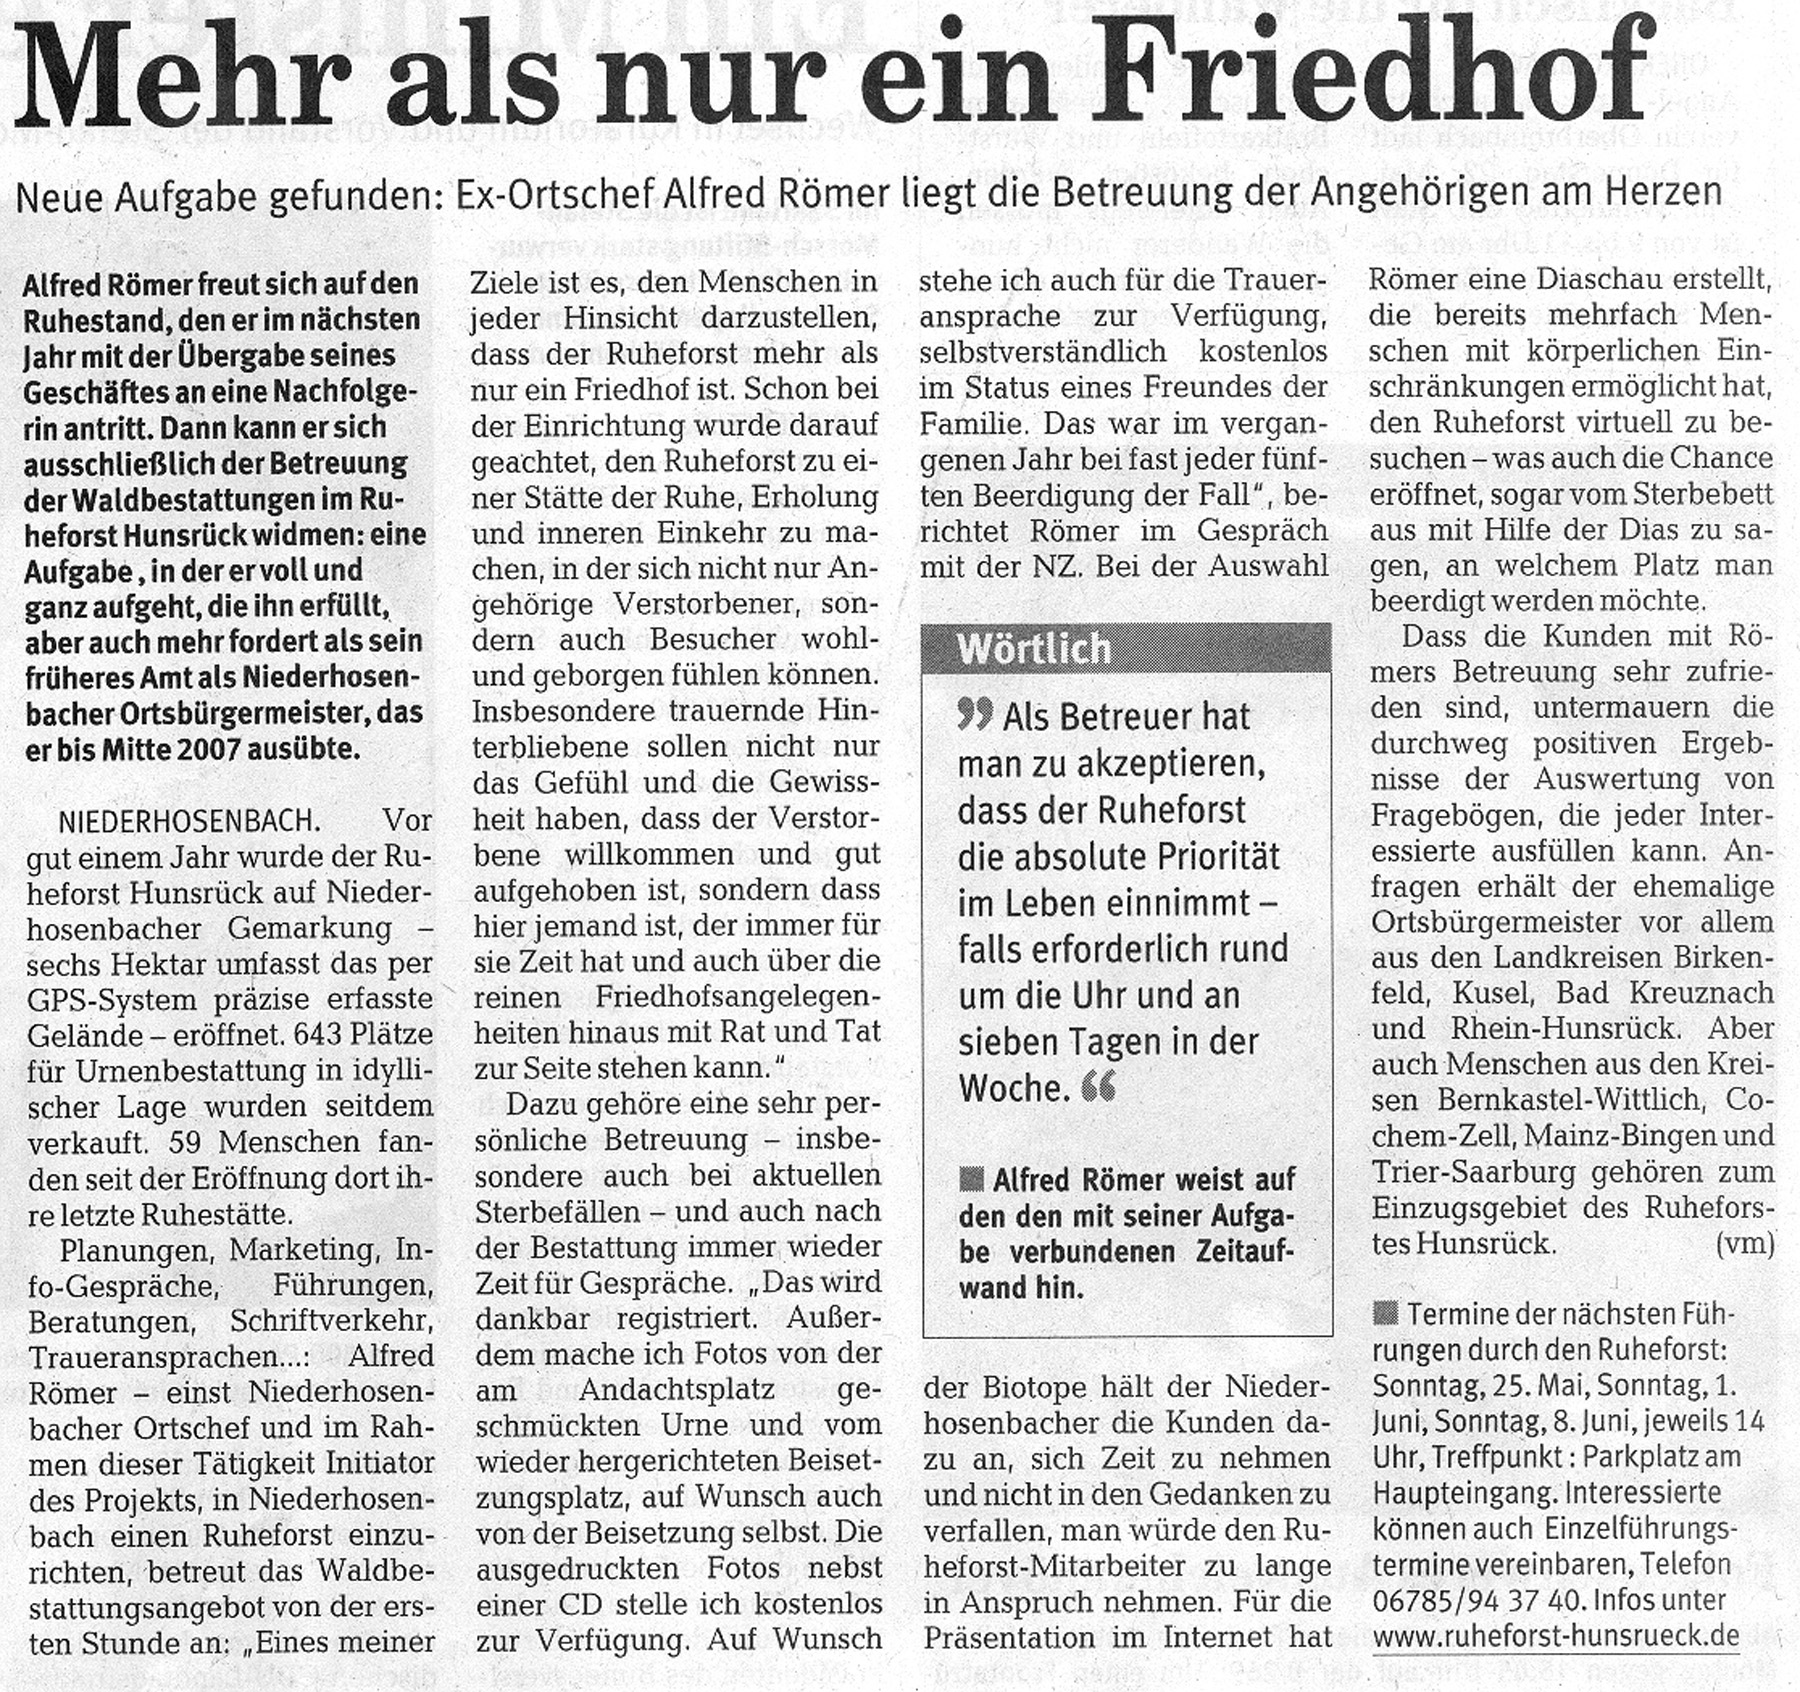 2008.05.21. Nahe-Zeitung (2) - Kopie